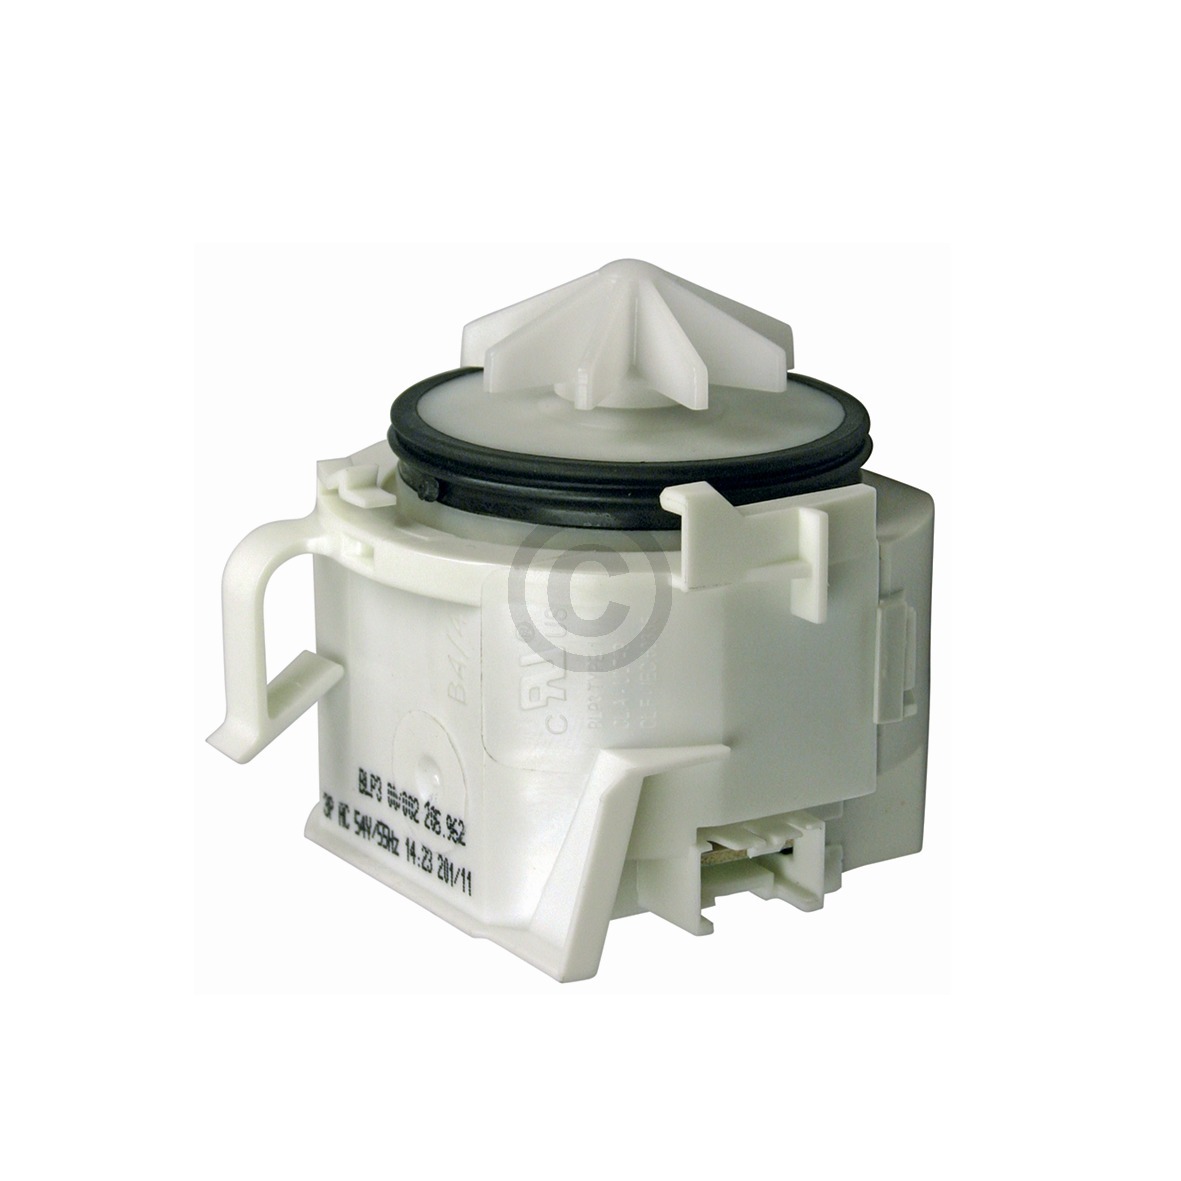 ORIGINAL Laugenpumpe EBS 001378 für Siemens Bosch Neff Pumpe Ablaufpumpe 